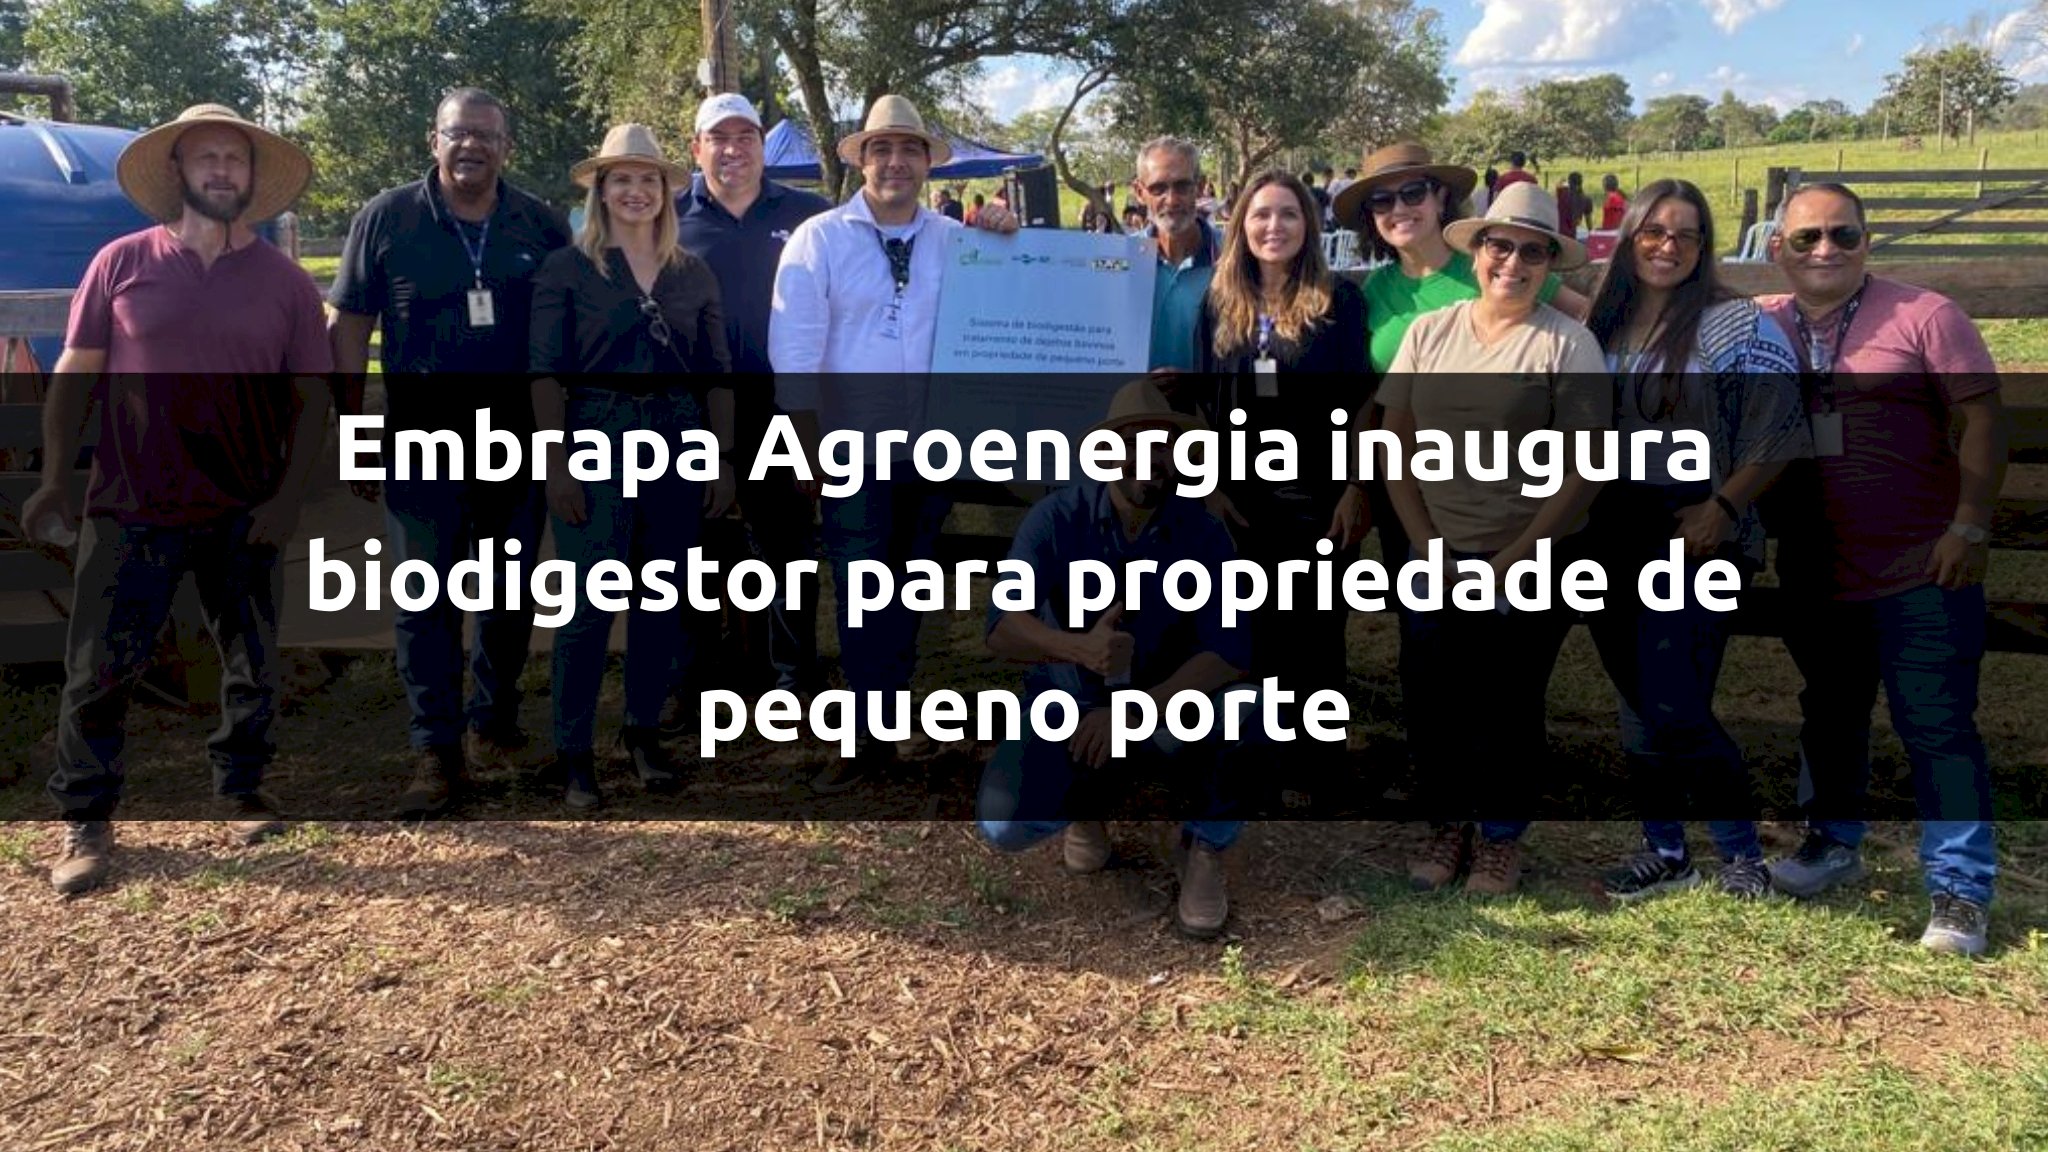 Embrapa Agroenergia inaugura biodigestor para tratamento de dejetos bovinos em propriedade de pequeno porte